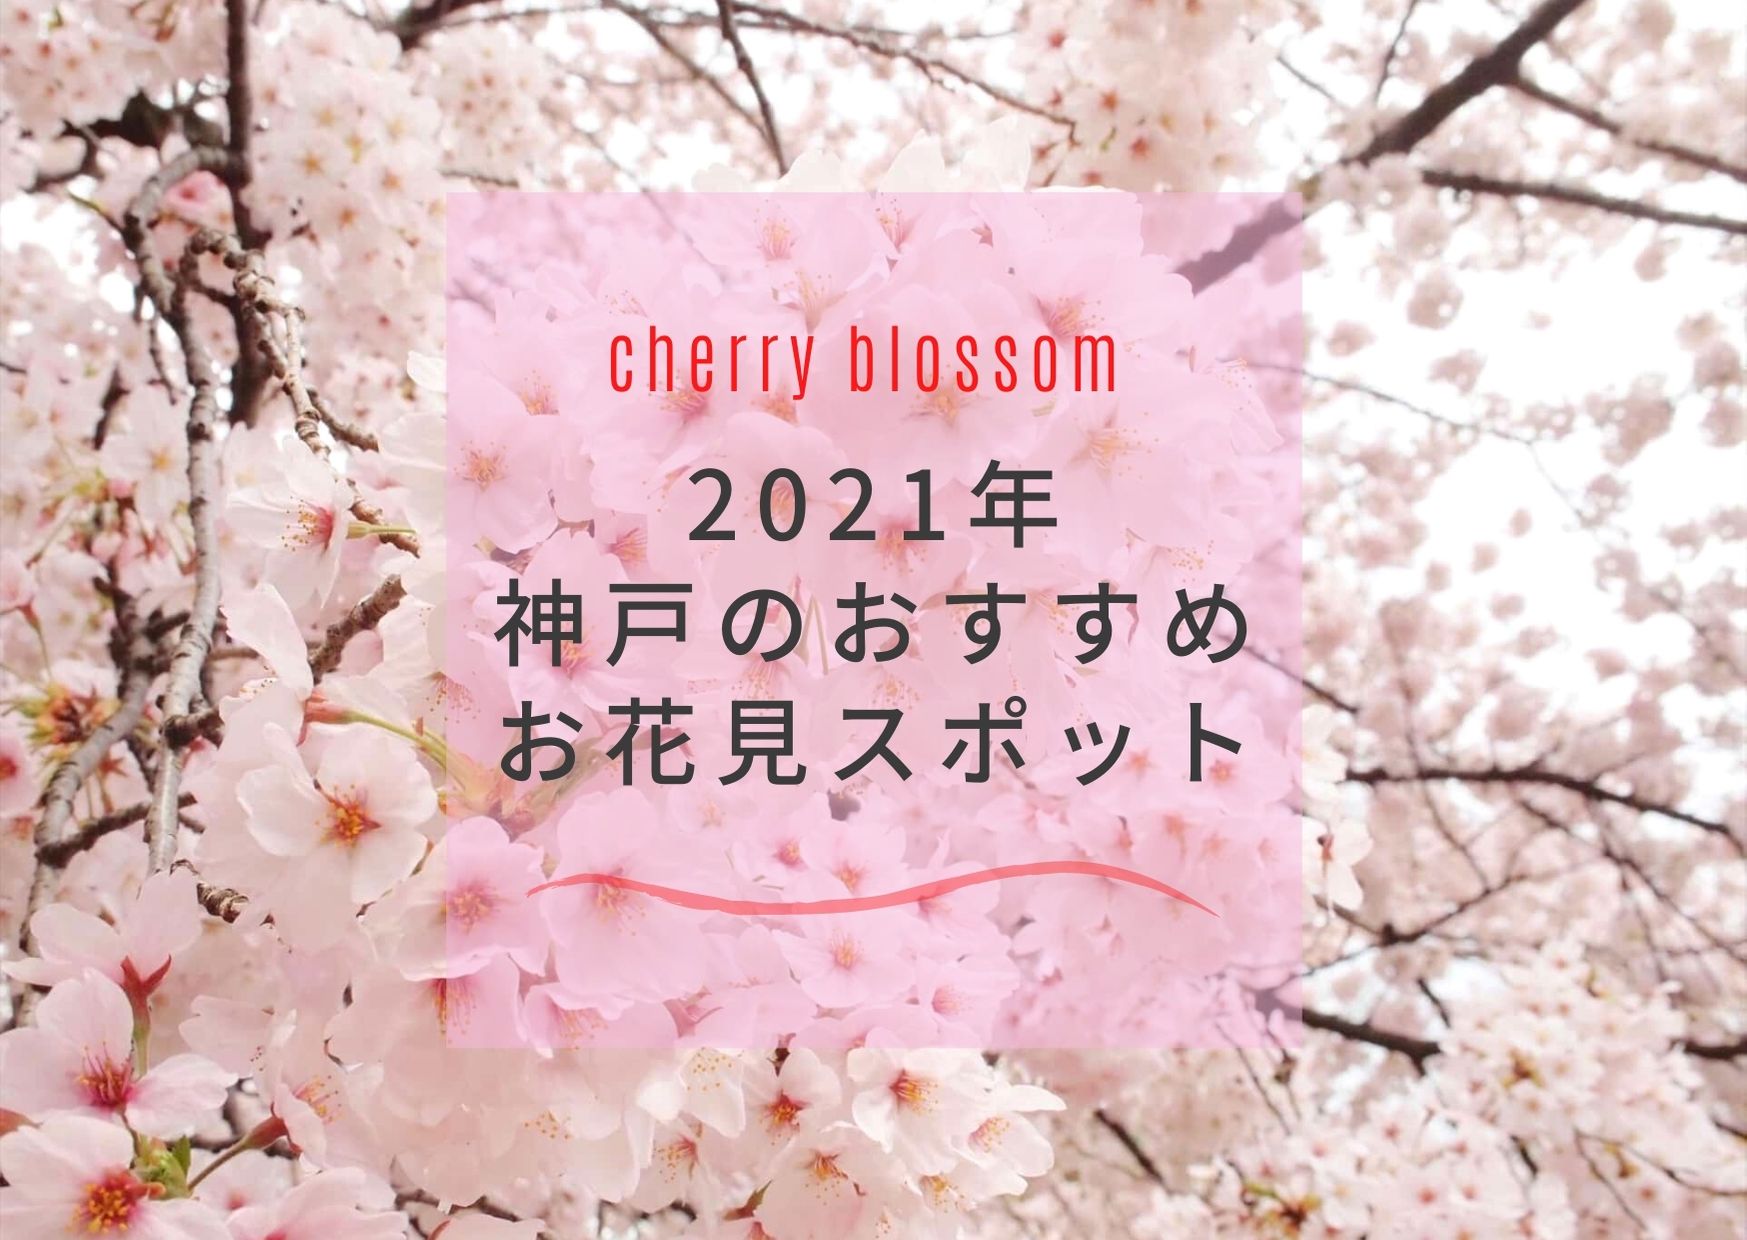 桜21 神戸でお花見 おすすめ 穴場の桜スポット9選 開花予想日 満開予想日も